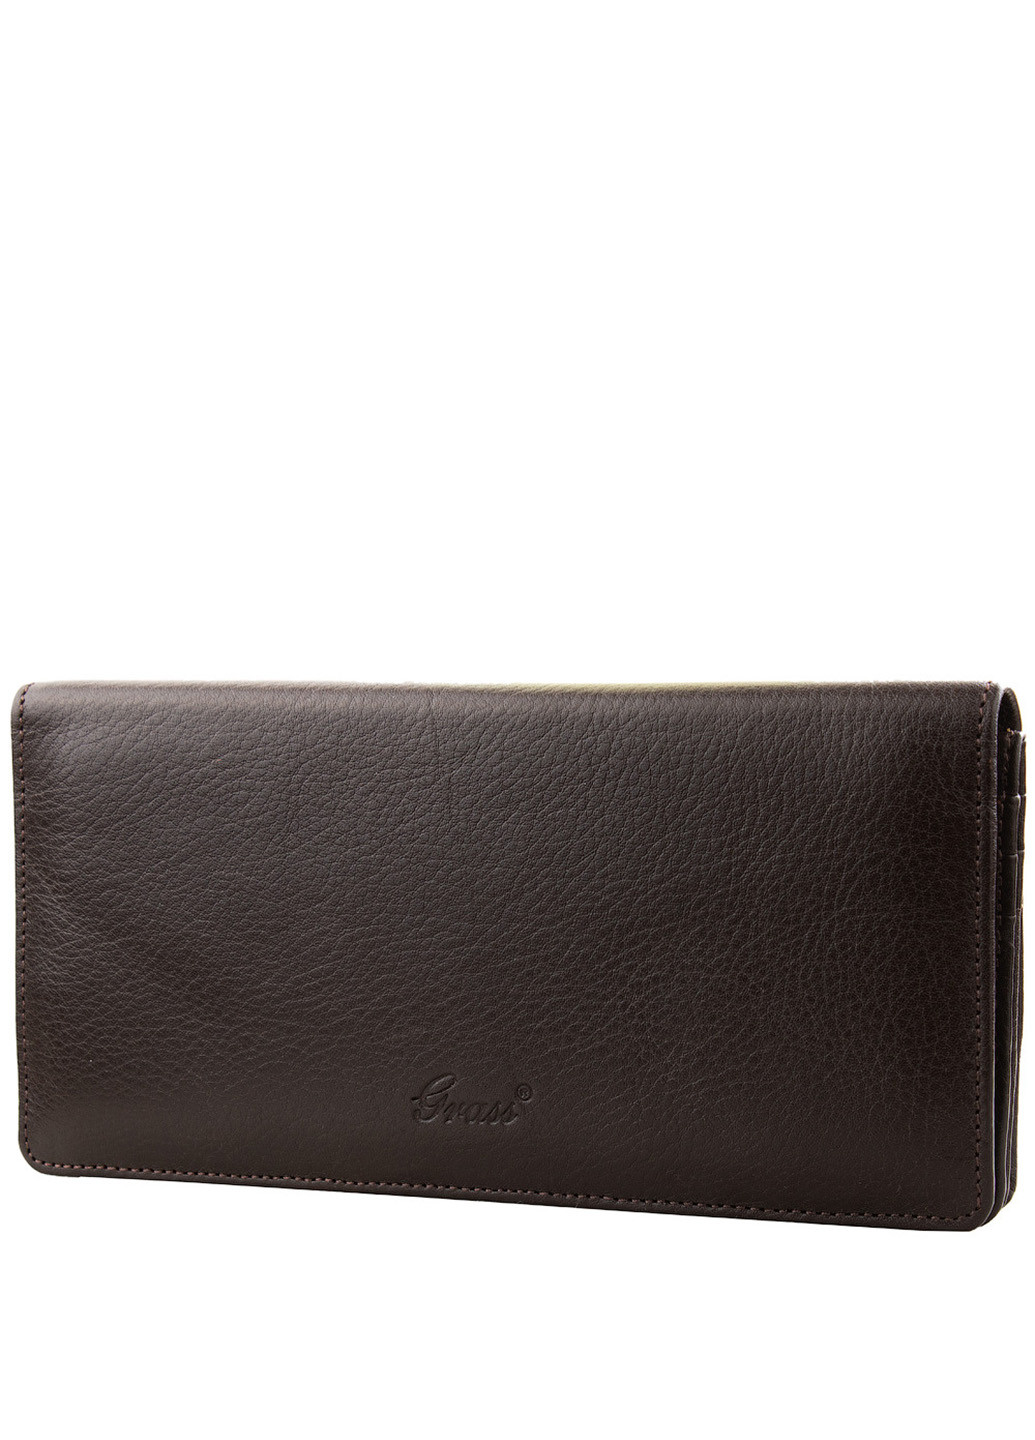 Жіночий шкіряний гаманець 19х9,5х2 см Grass (216146215)